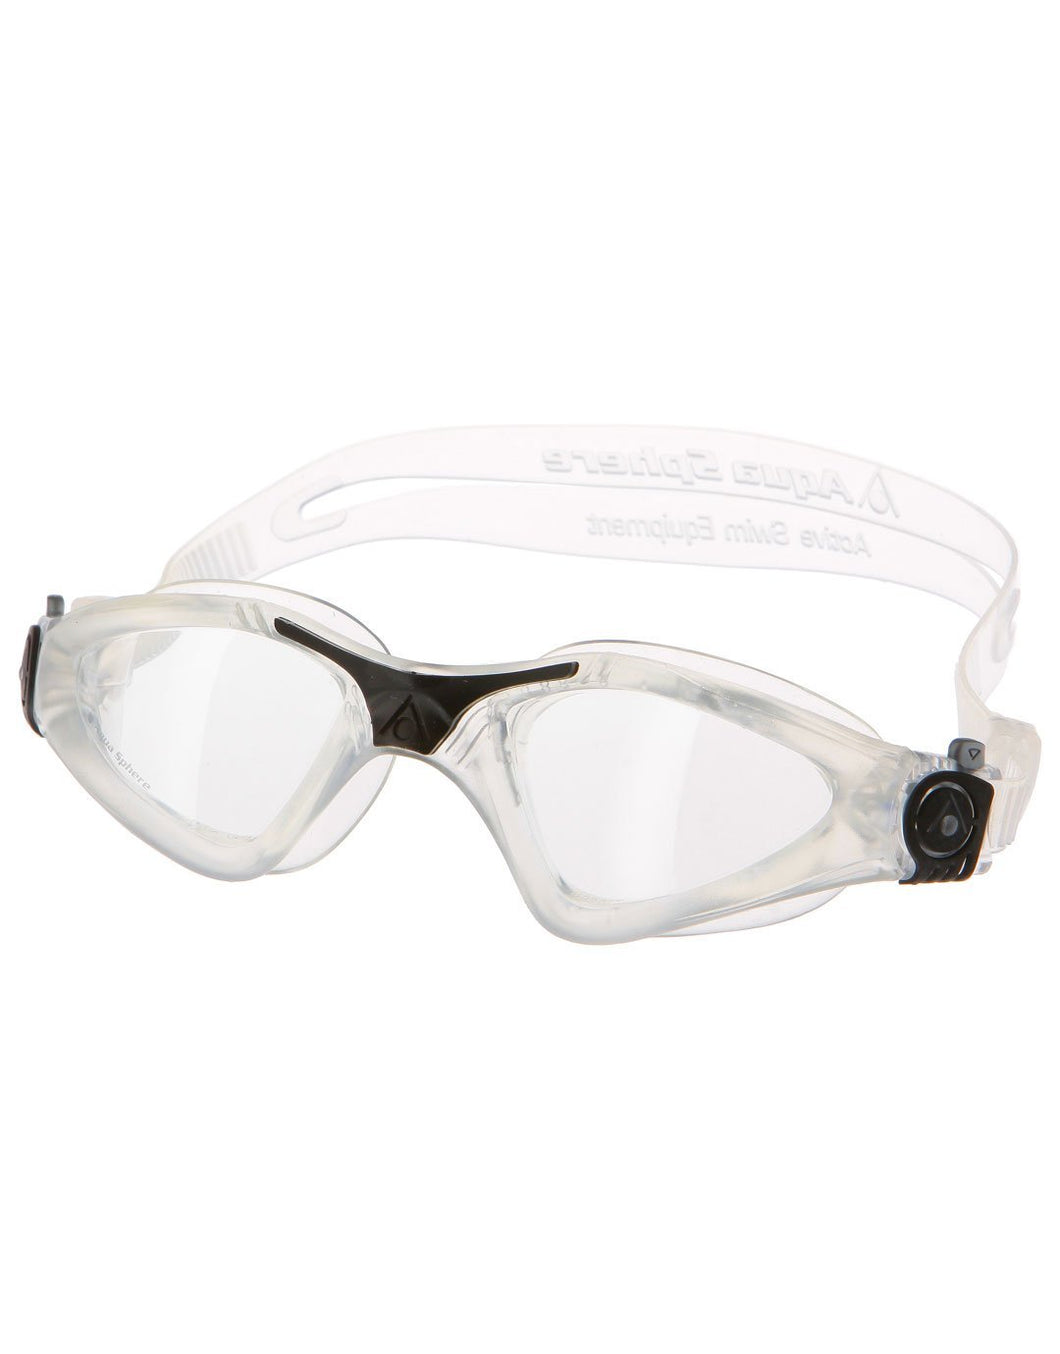 Aqua Sphere Kayenne Swim Goggles Unisex - Clear/Black